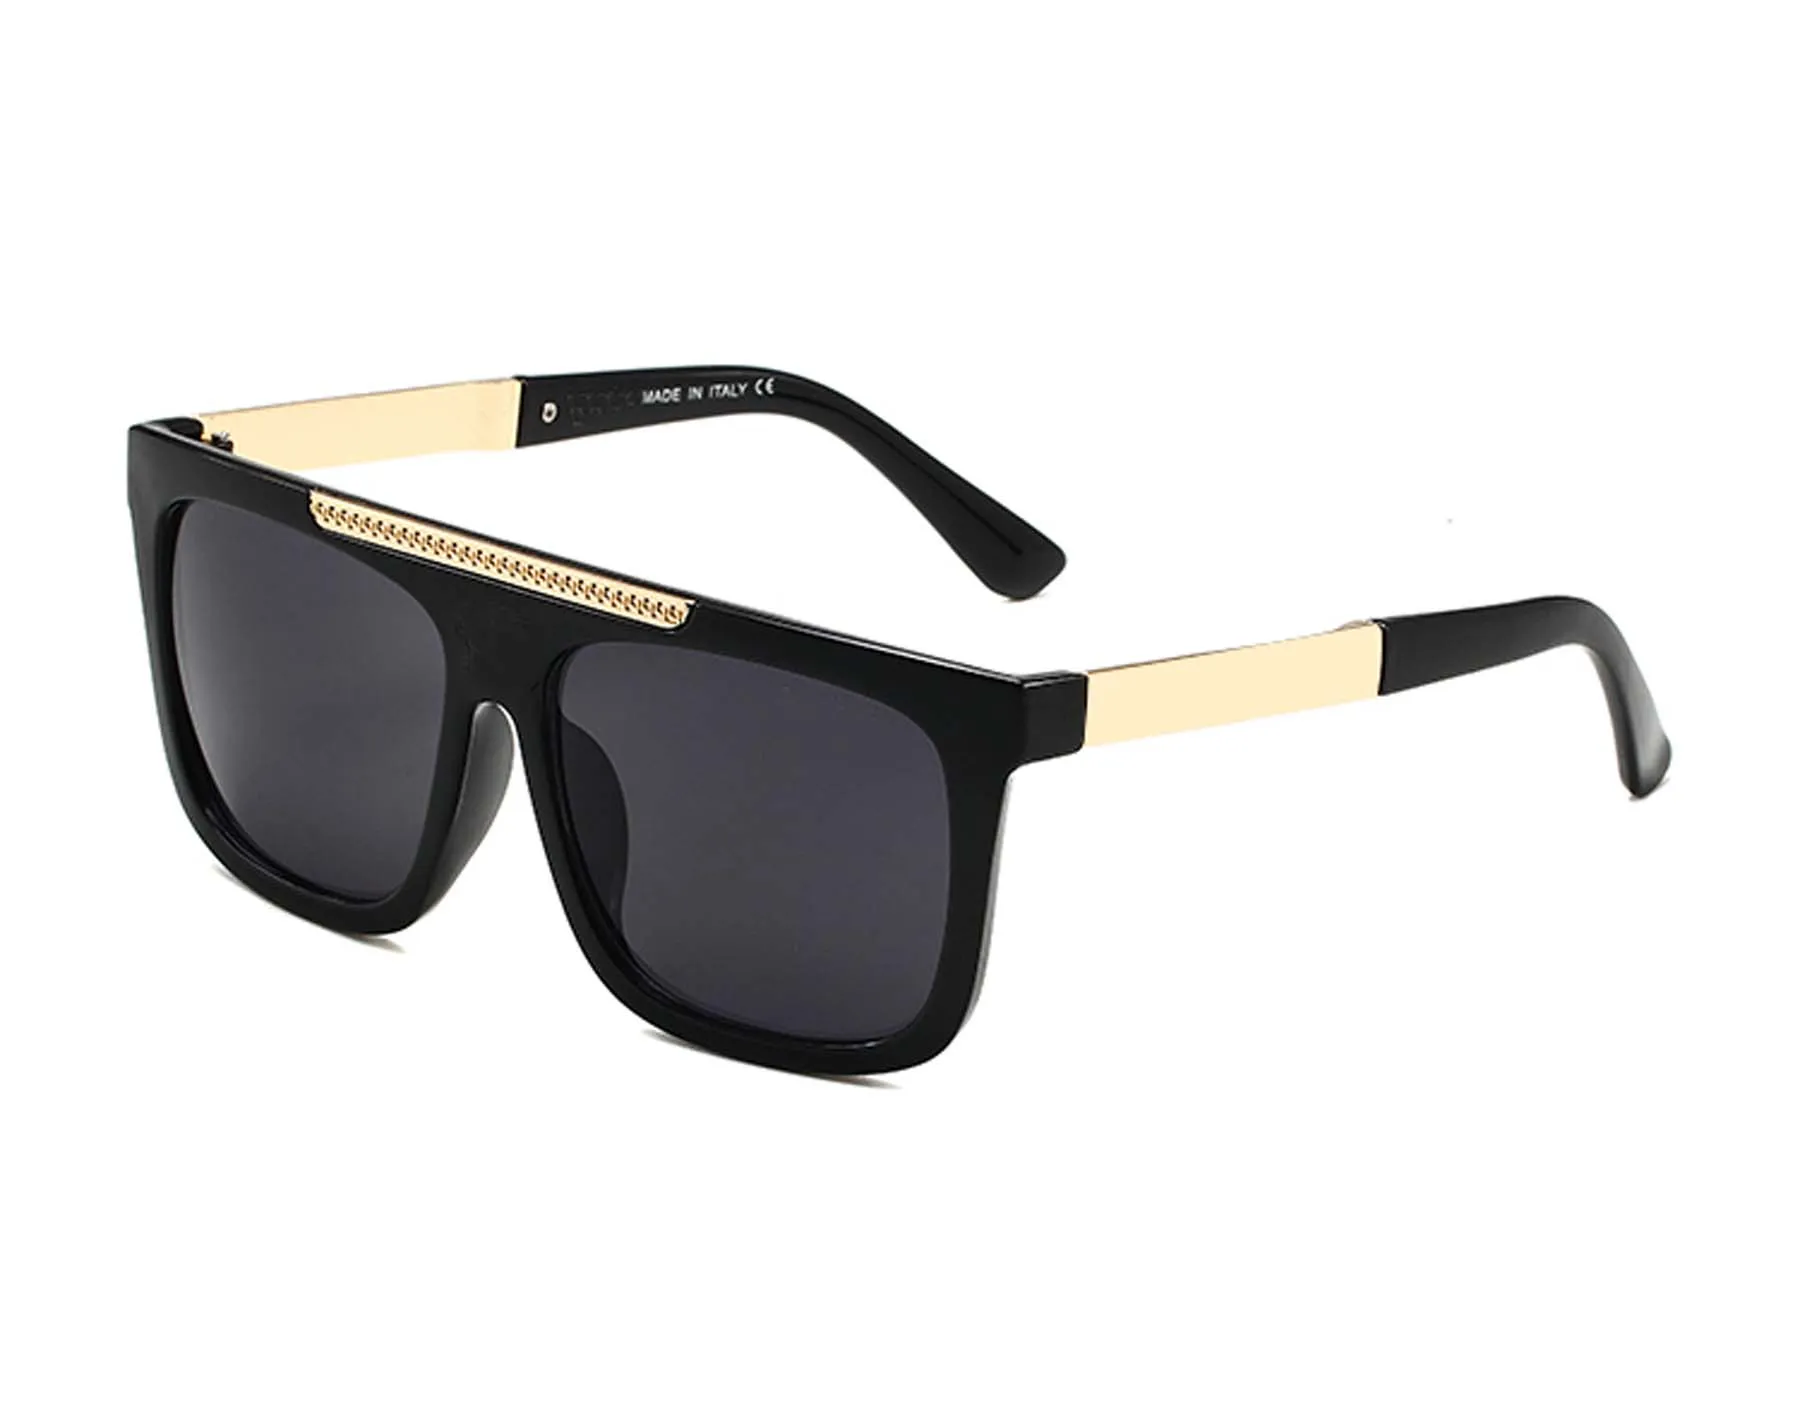 1pcs 여름 럭셔리 선글라스 남성 여성 유니esex 디자이너 고글 비치 일요일 안경 레트로 작은 프레임 럭셔리 디자인 UV400 상자 안경을 가진 최고 품질